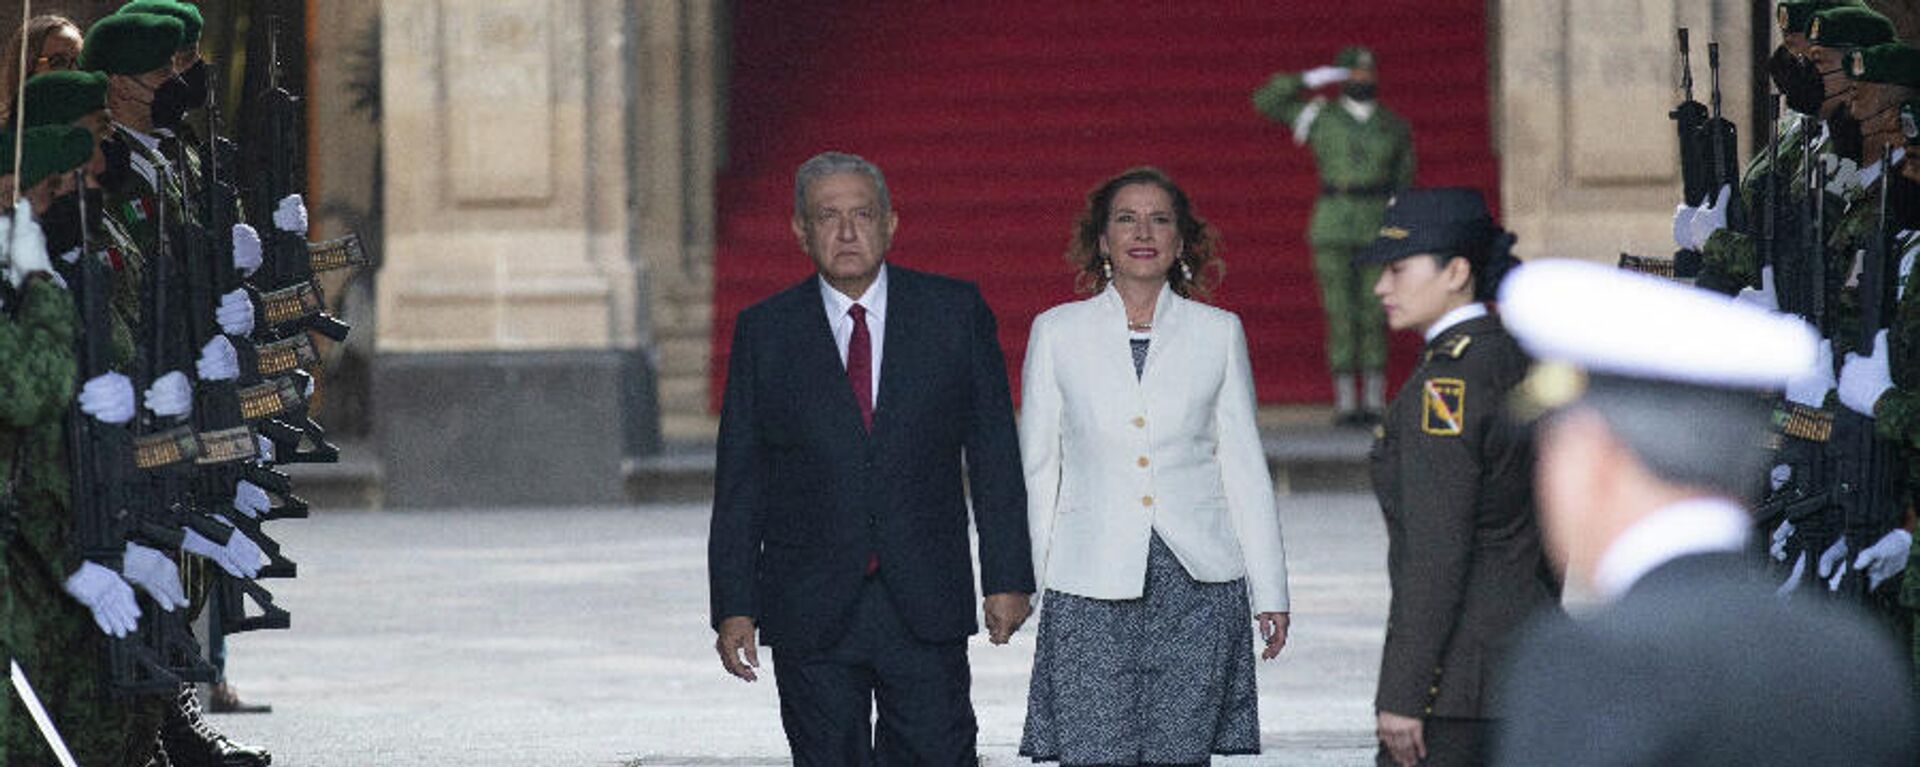 Andrés Manuel López Obrador, presidente de México, y Beatriz Gutiérrez Müller, académica y su esposa - Sputnik Mundo, 1920, 01.12.2021